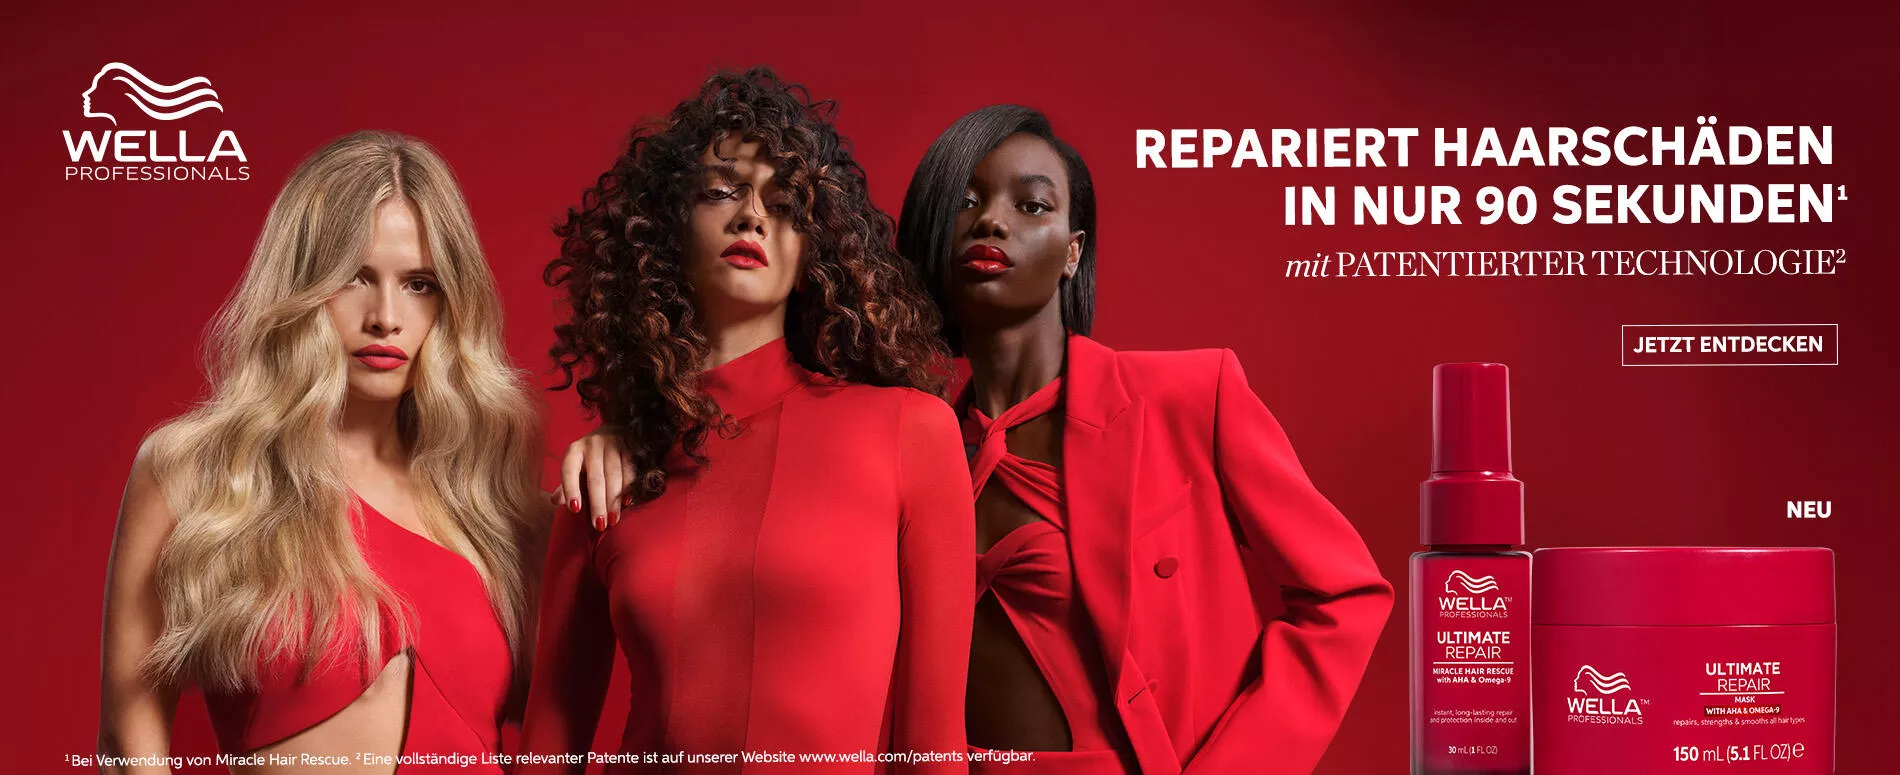 Bild von 3 Models in Rot neben einer roten Flasche Ultimate Repair Mask für geschädigtes Haar von Wella Professionals